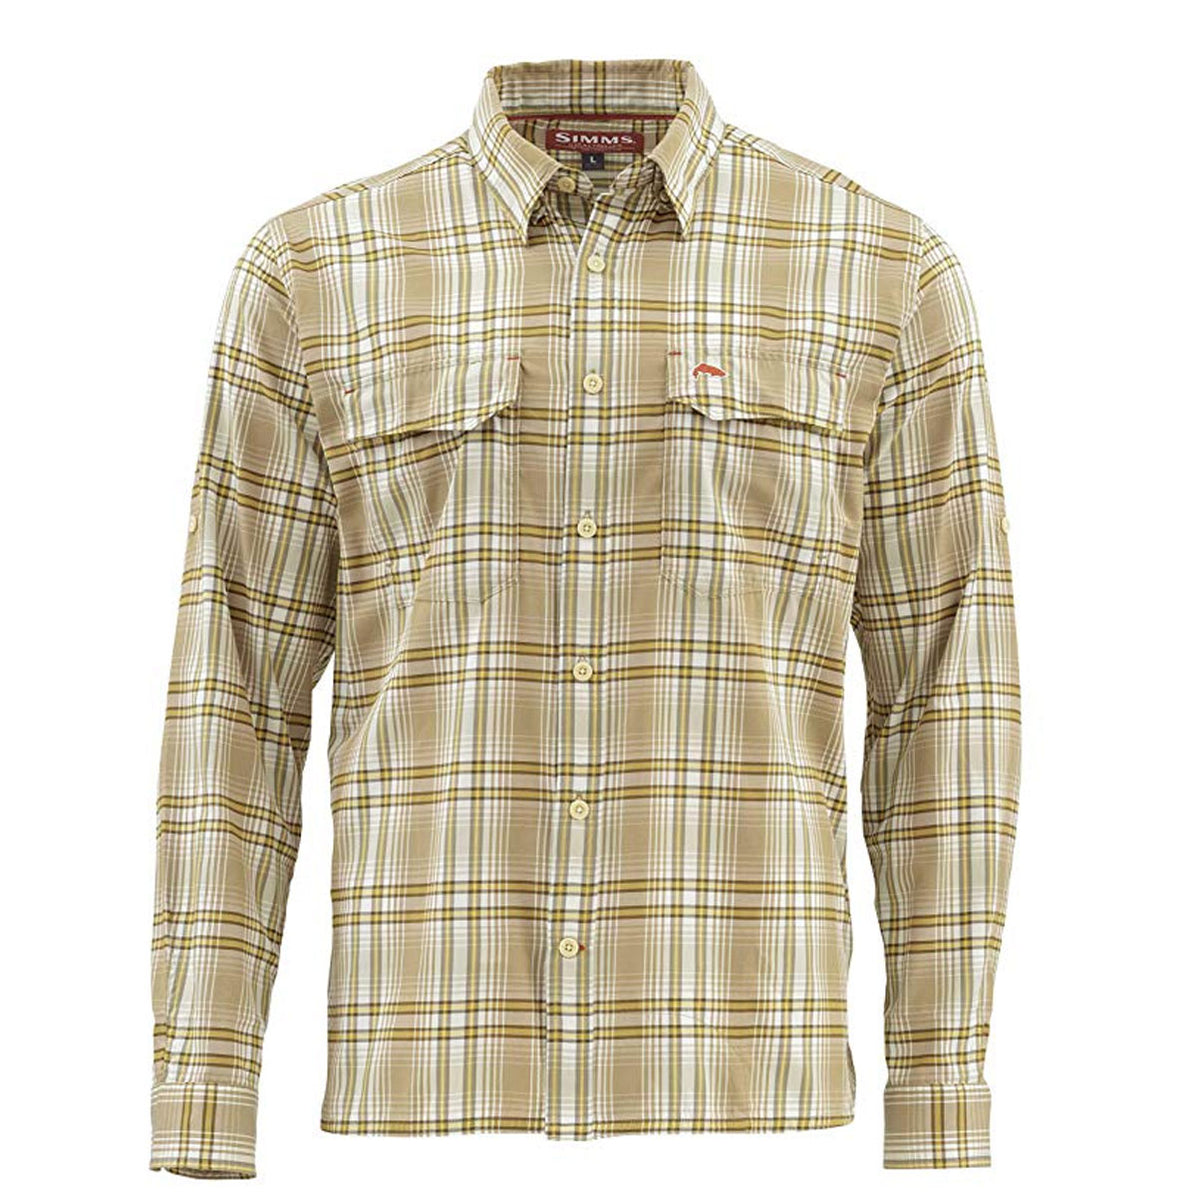 Simms Legend Long Sleeve Shirt - Briar Plaid